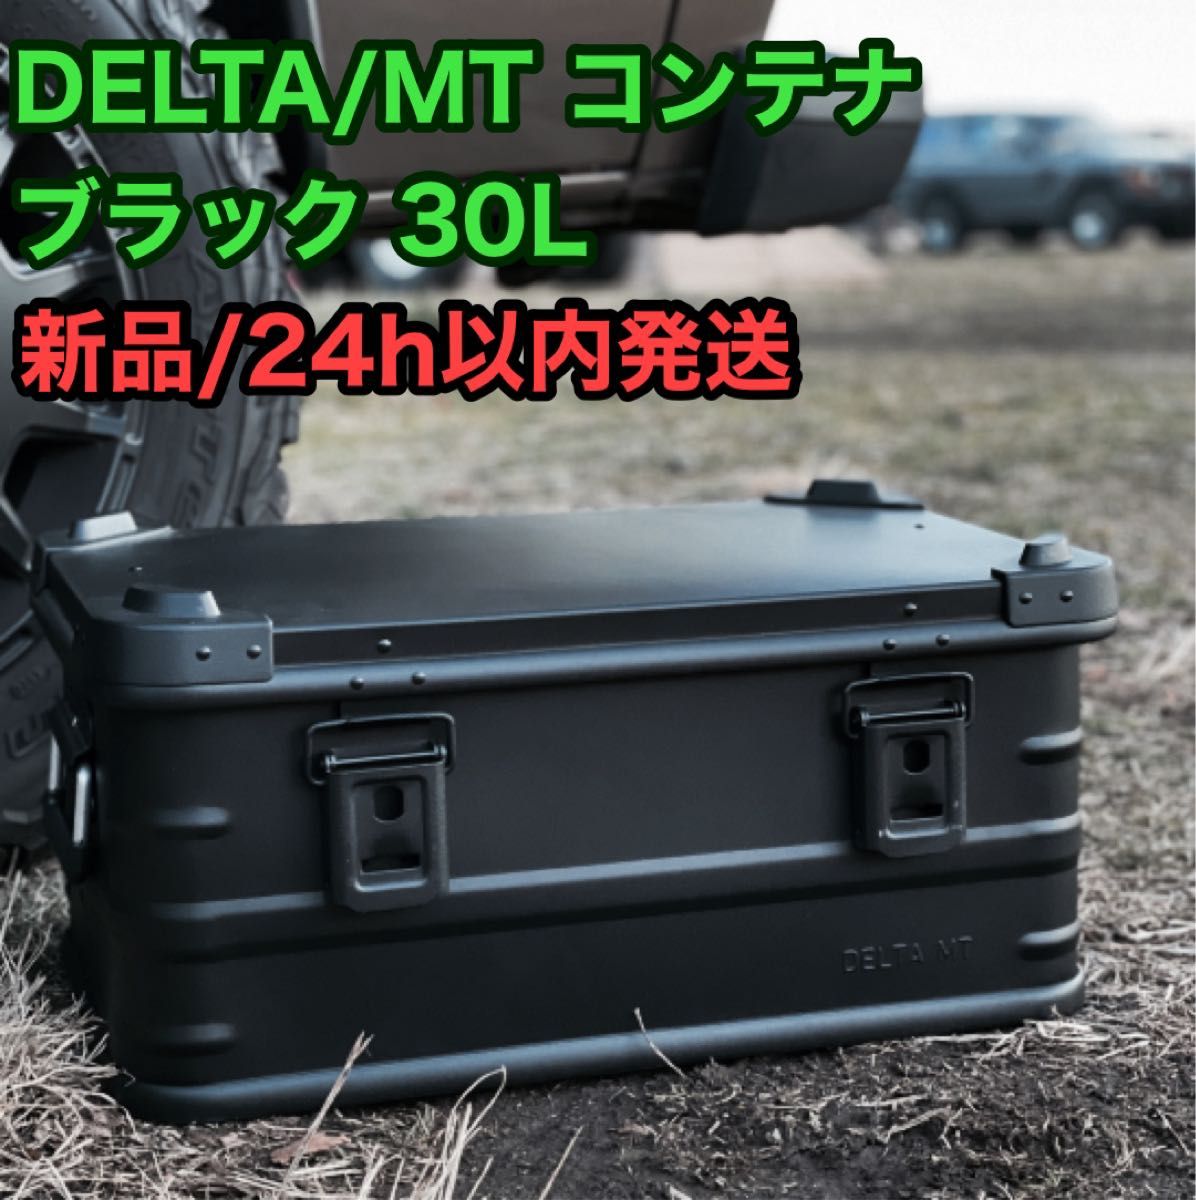 【新品/未開封】 DELTA/MT 30L アルミコンテナ SB-E30BK 2023年限定カラー ブラック 黒 デルタ